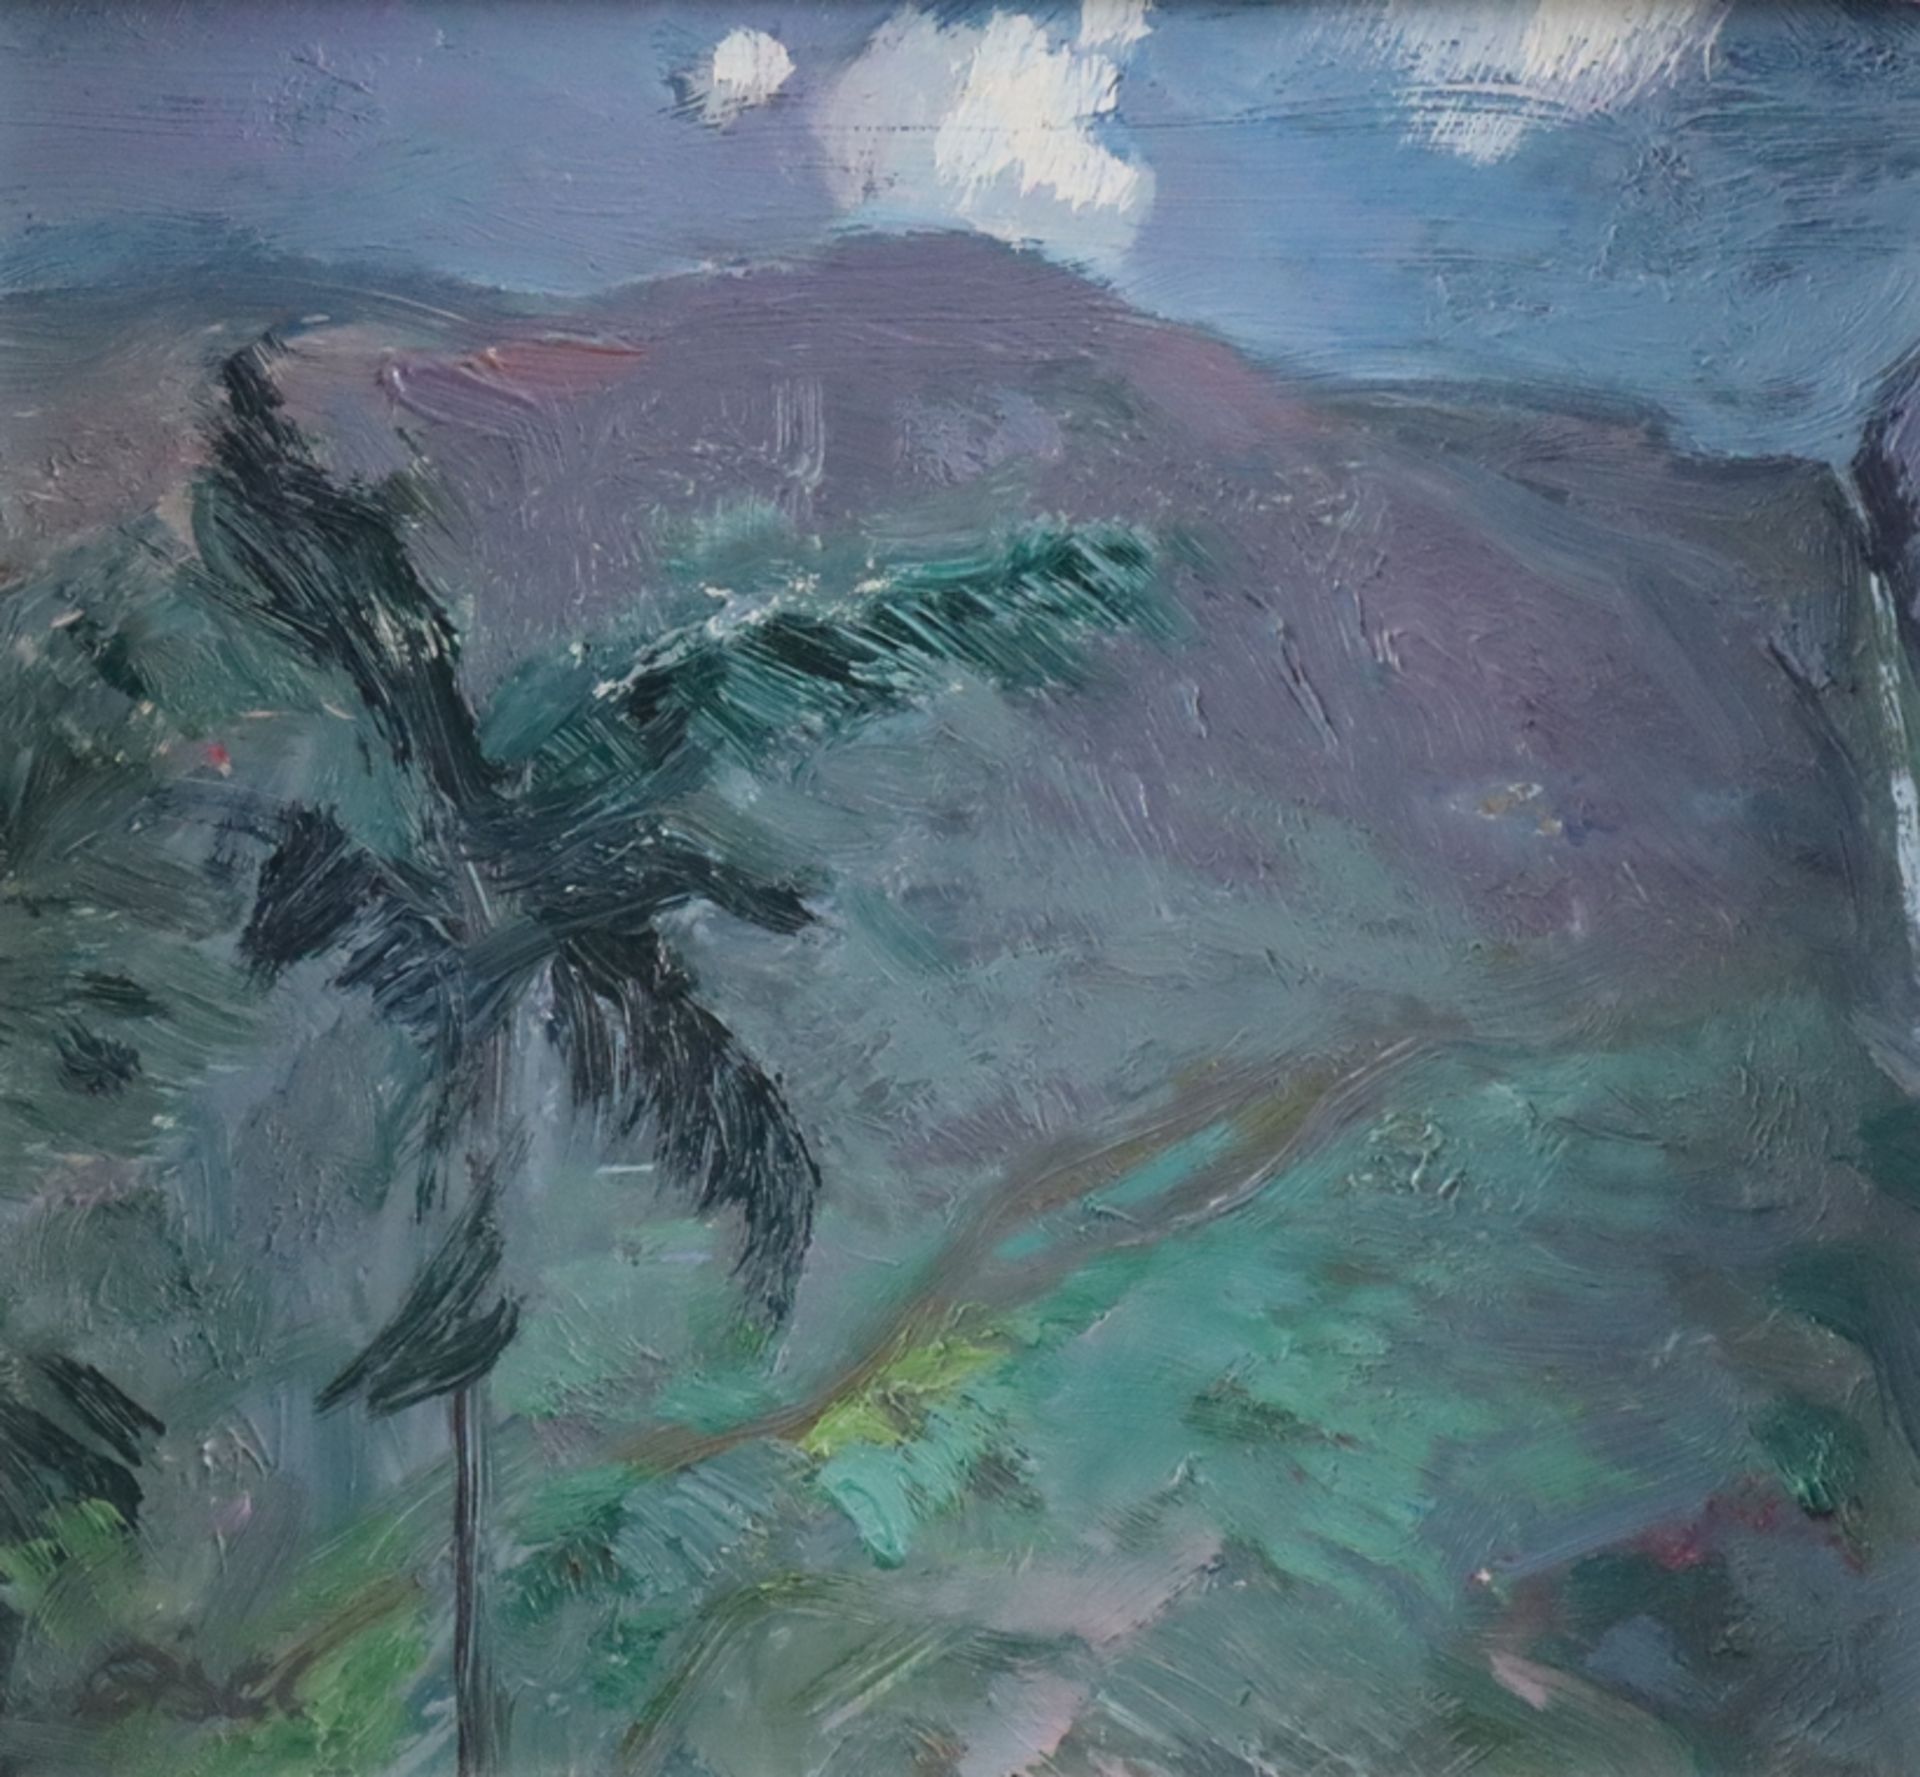 Eisel, Fritz (1929 Lauterbach/Hessen - 2010 Langen Brütz) - Ceylonesische Berglandschaft, Öl auf Ha